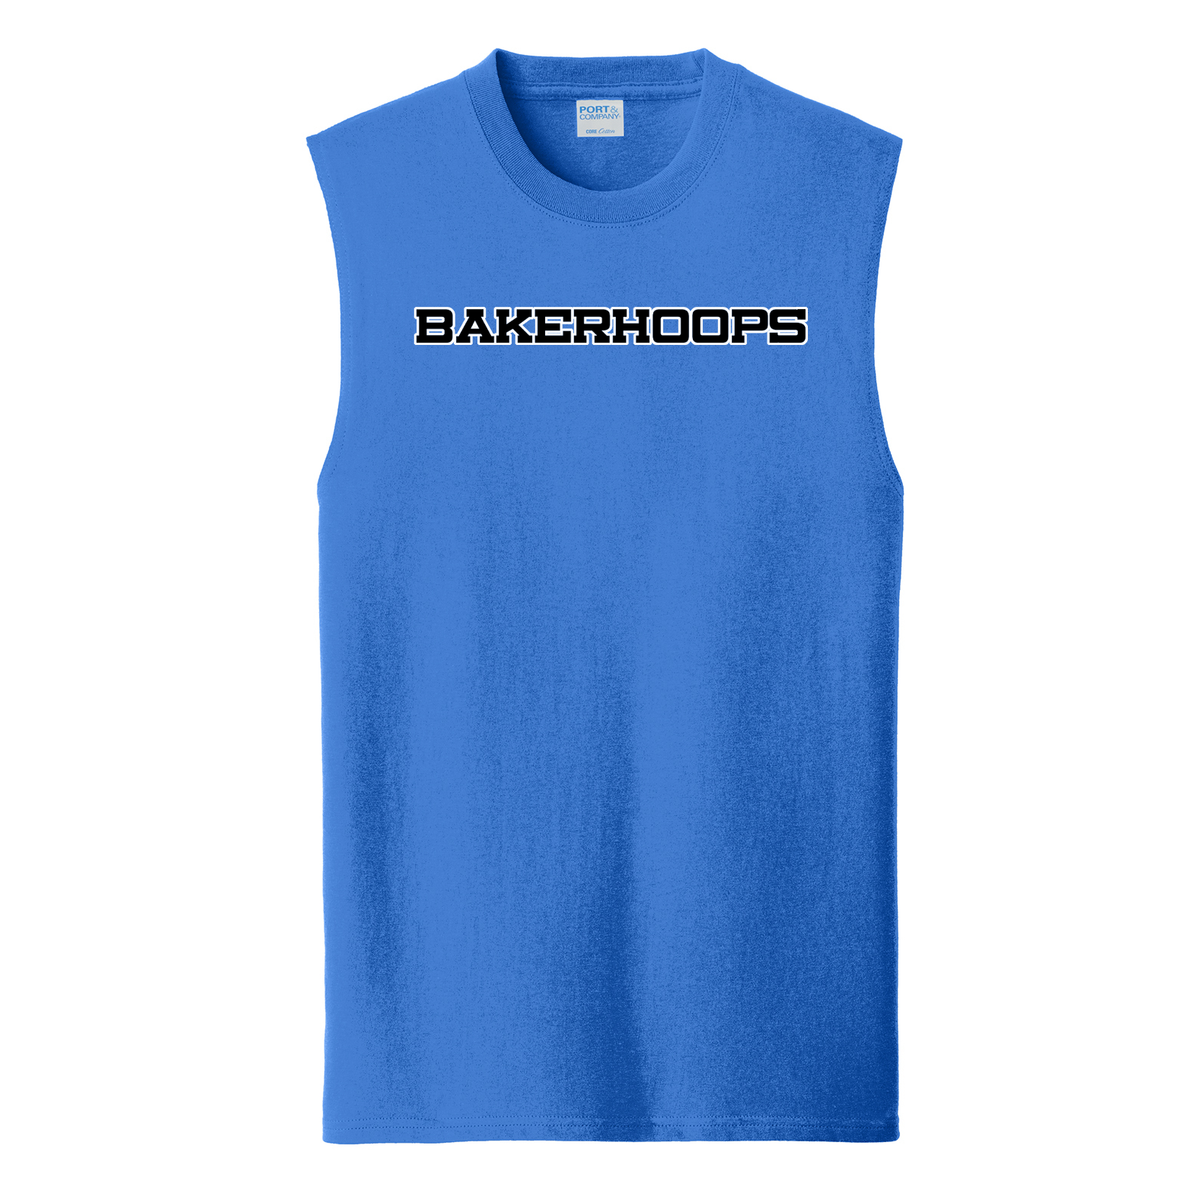 Bakerhoops Sleeveless T-Shirt